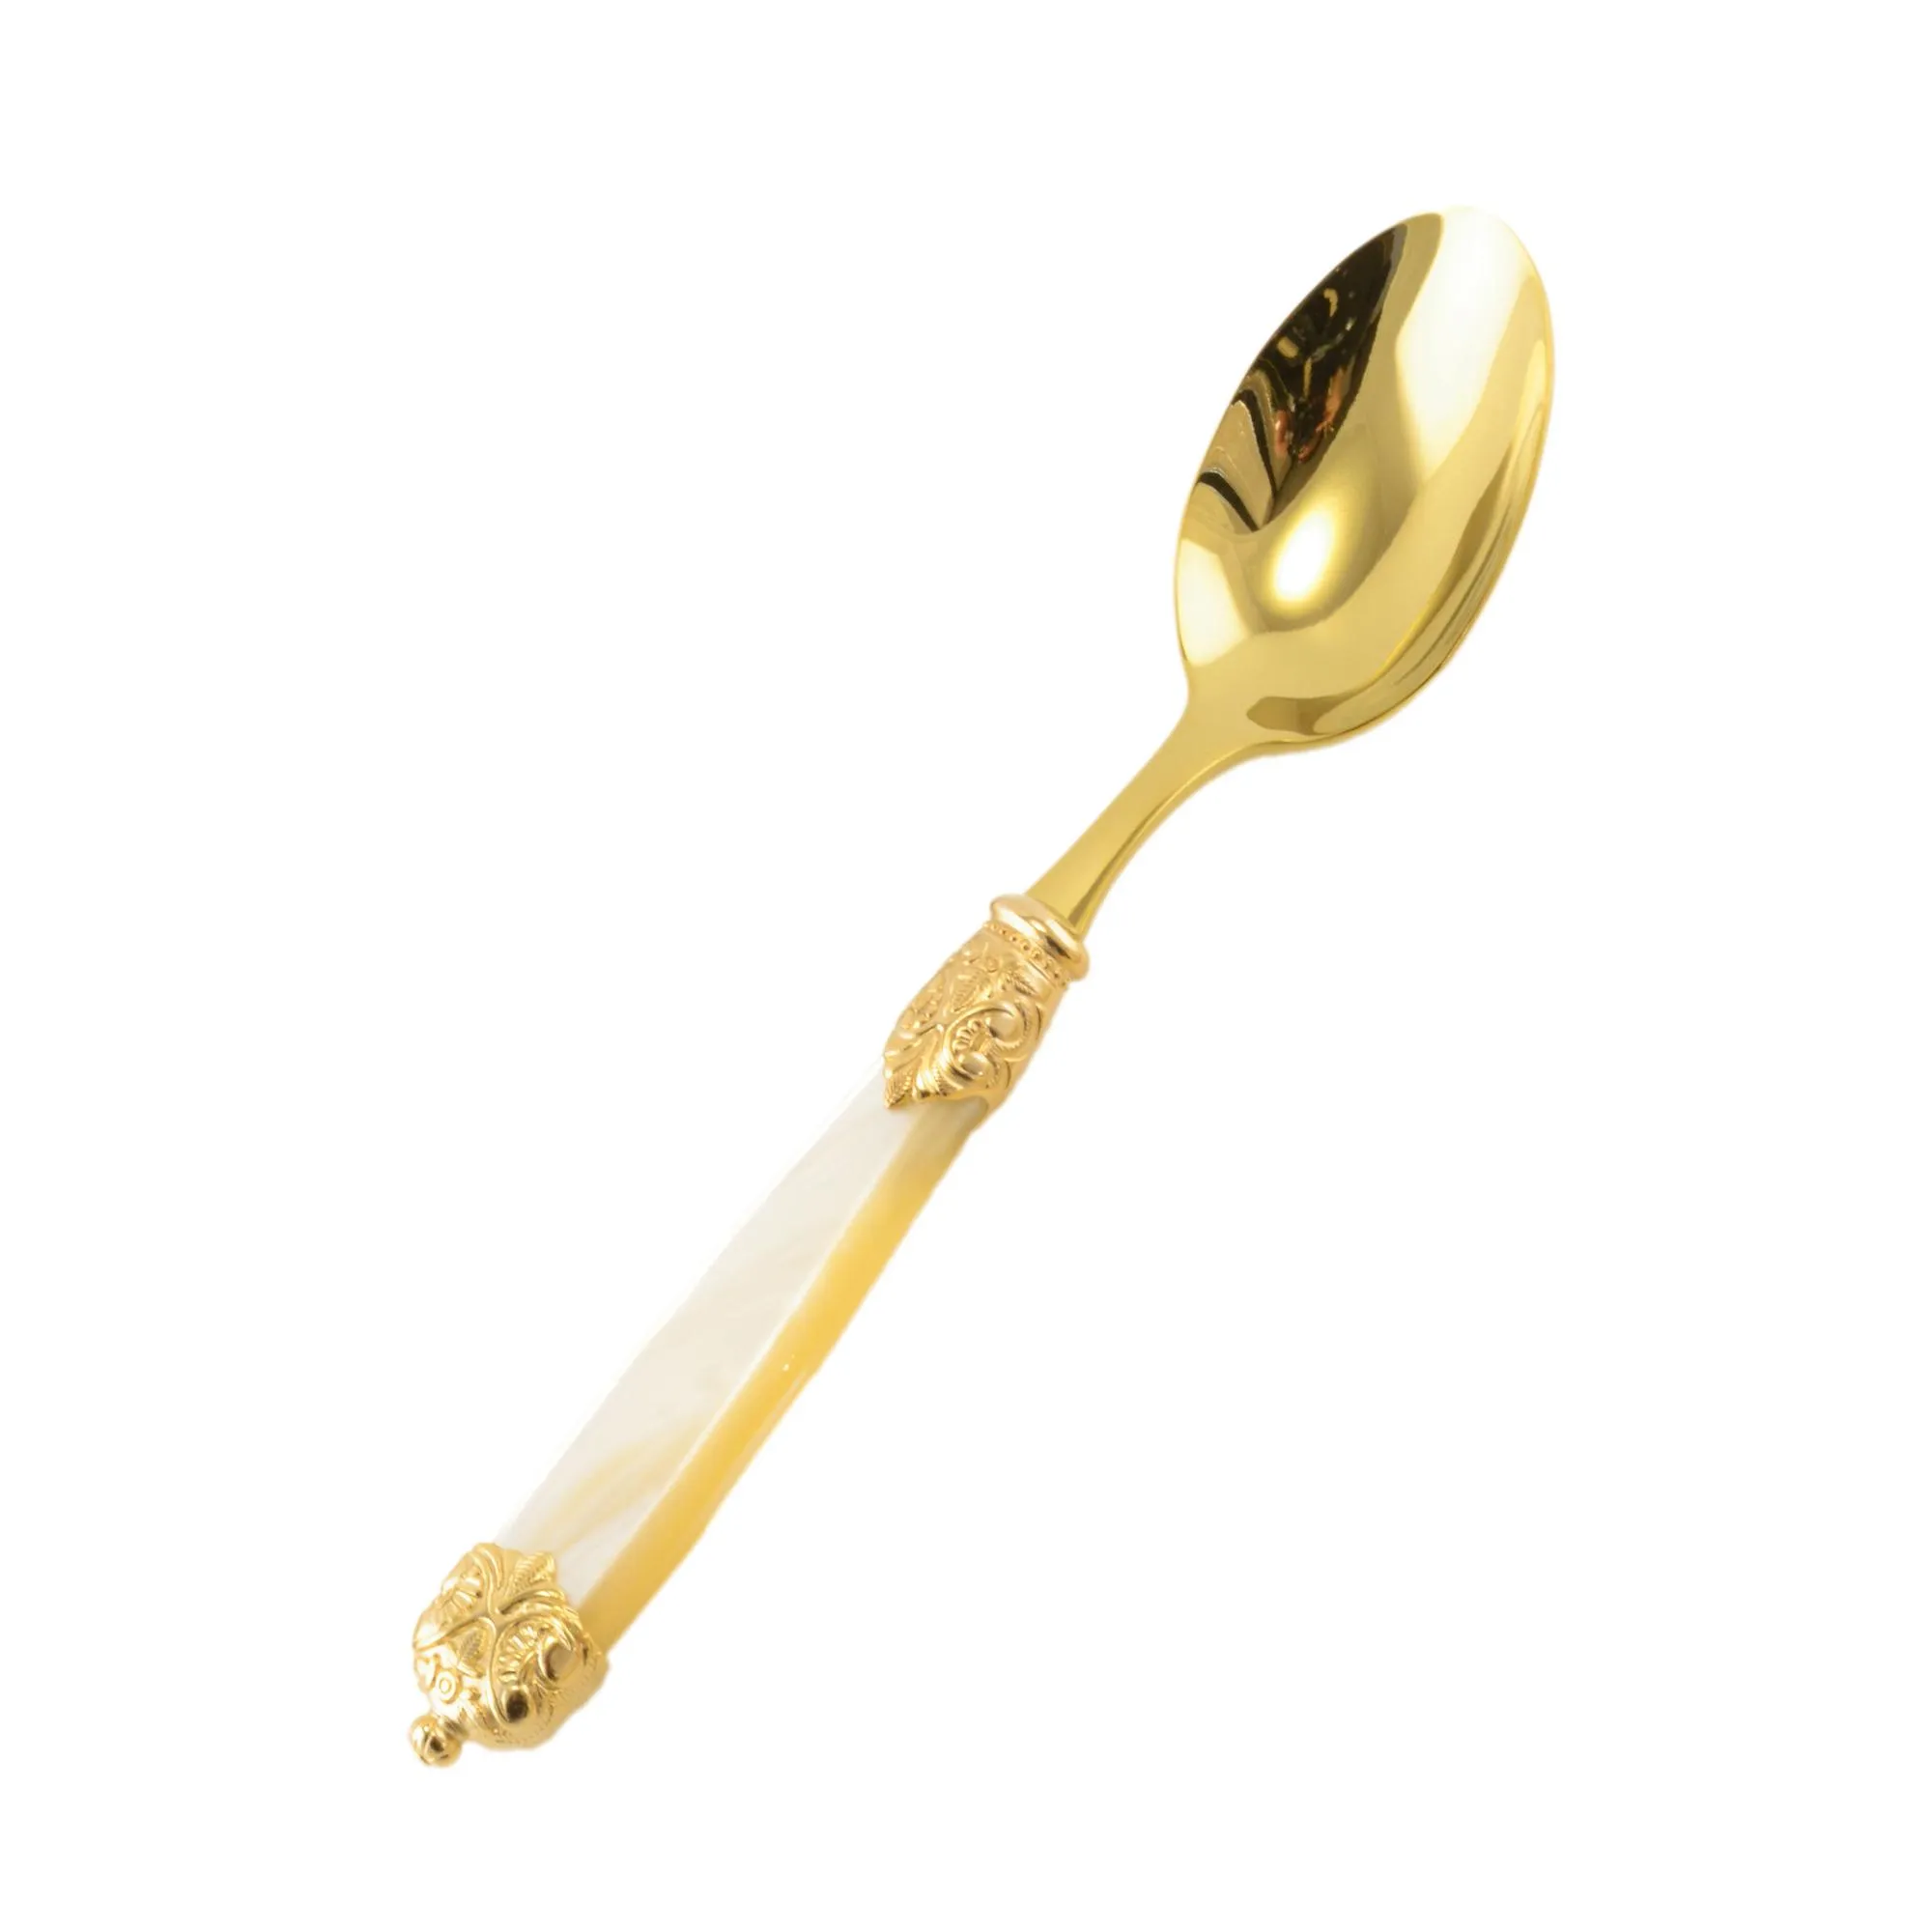 Cucchiaio da Tavola Mirage in Ghiere oro Tin Gold 18.10 (AISI 304) manico perlato doppia ghiera lavabili in lavastoviglie Avorio Perlato